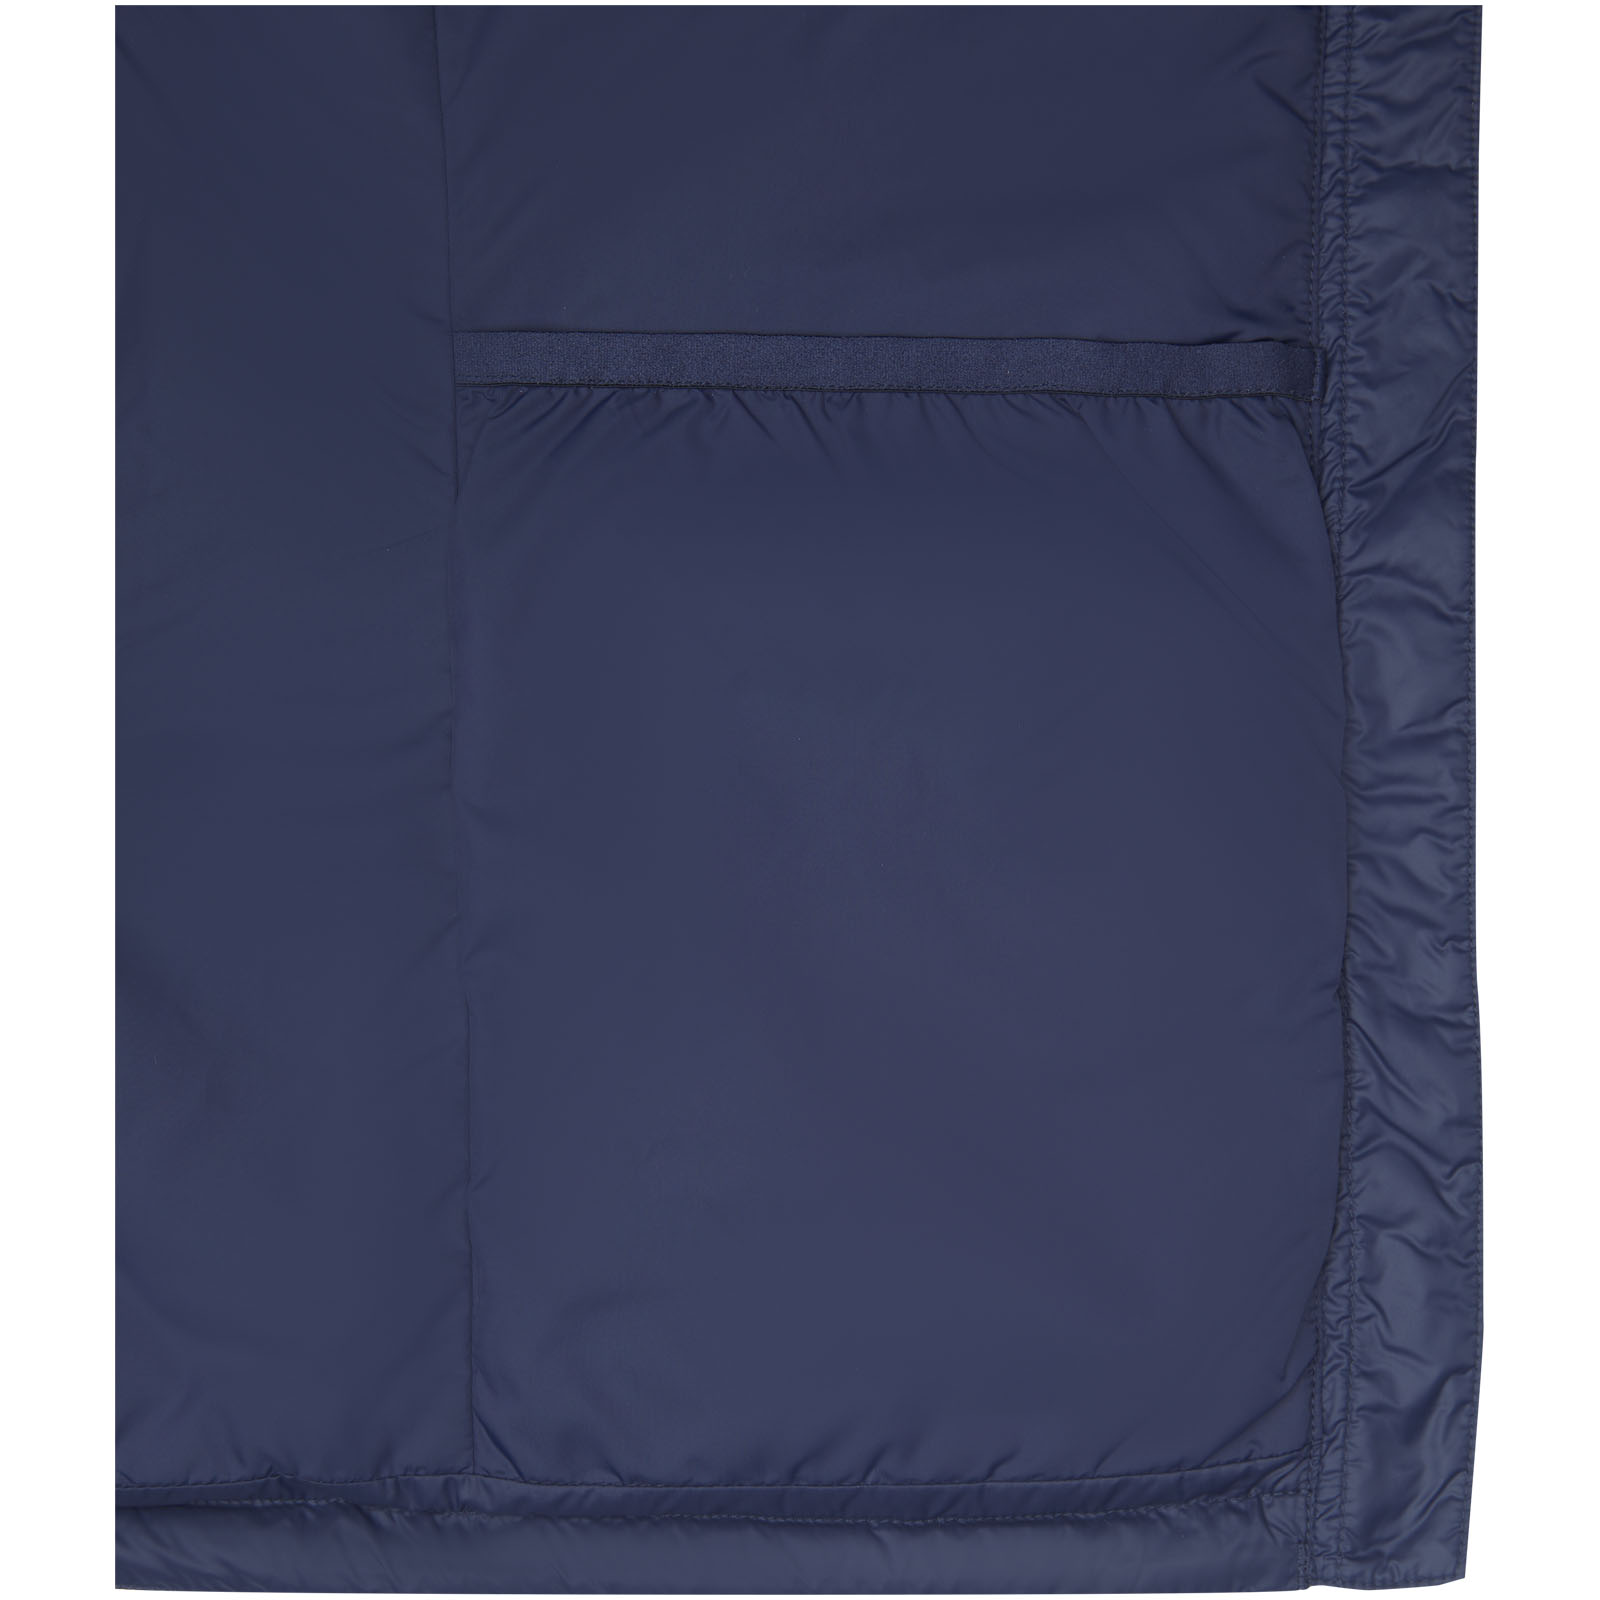 Jackets publicitaires - Veste duvet isotherme Petalite recyclée certifiée GRS pour femme - 4